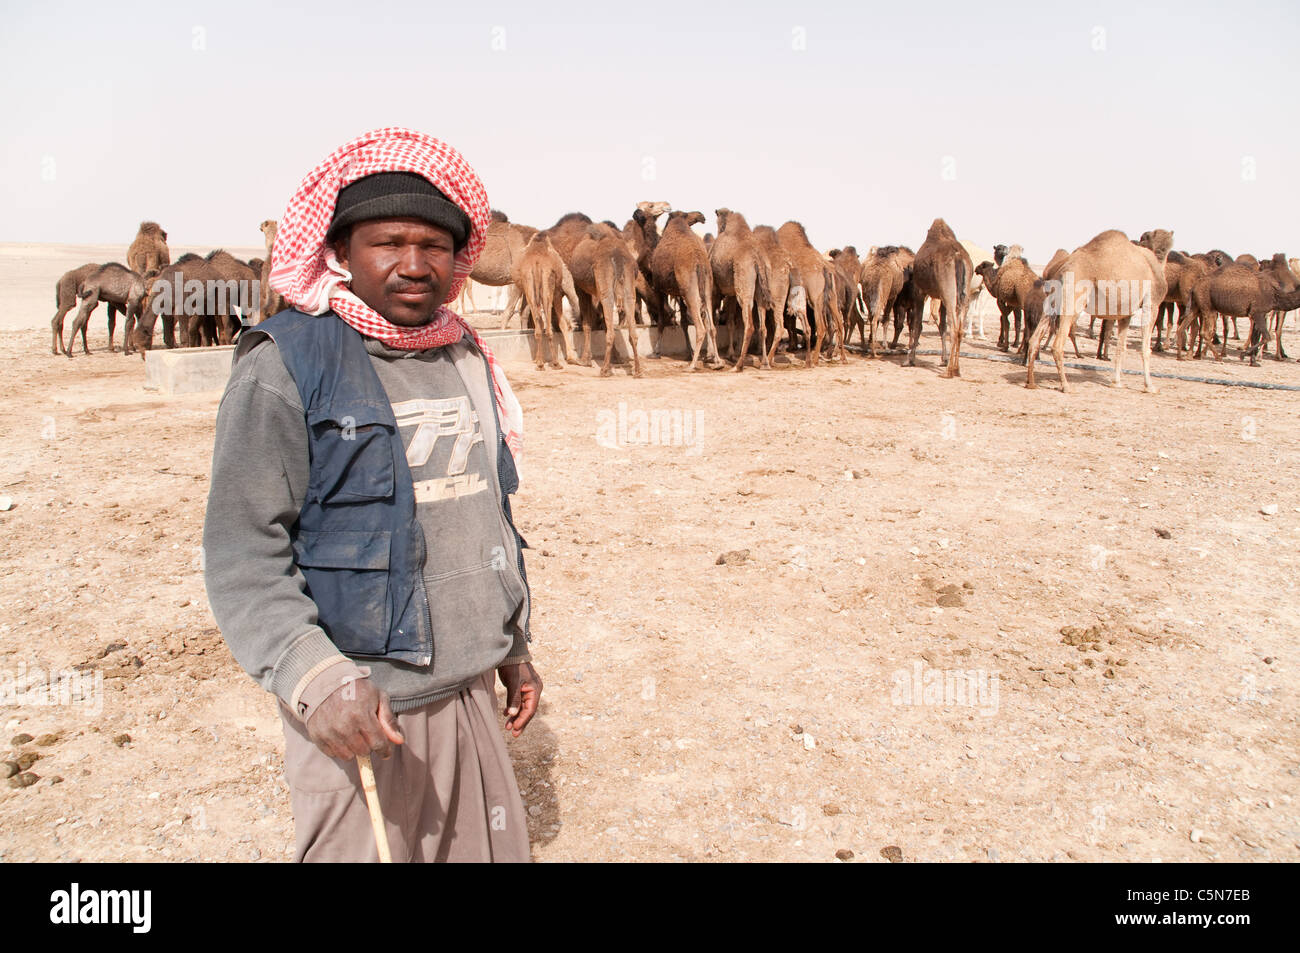 Porträt eines Migranten sudanesischen Kamel herder tendenziell eine Herde von domestizierten Arabische Kamele in der al-Hazim Region der Östlichen Wüste von Jordanien. Stockfoto